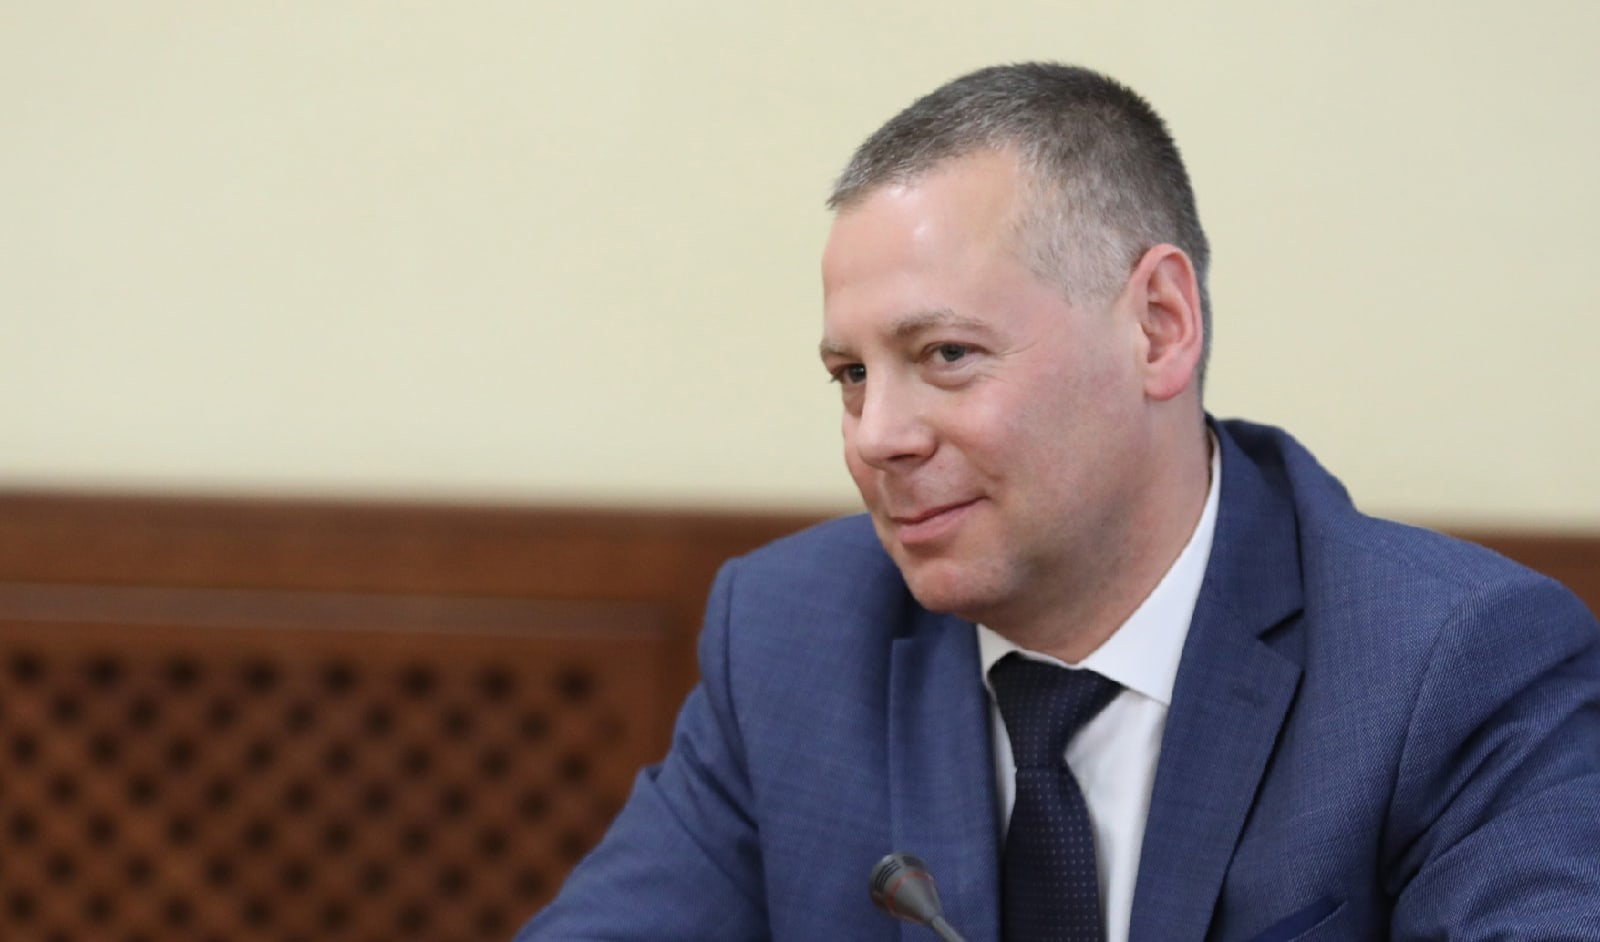  "Может, сядет кто-нибудь": что ярославцы говорят о новом губернаторе